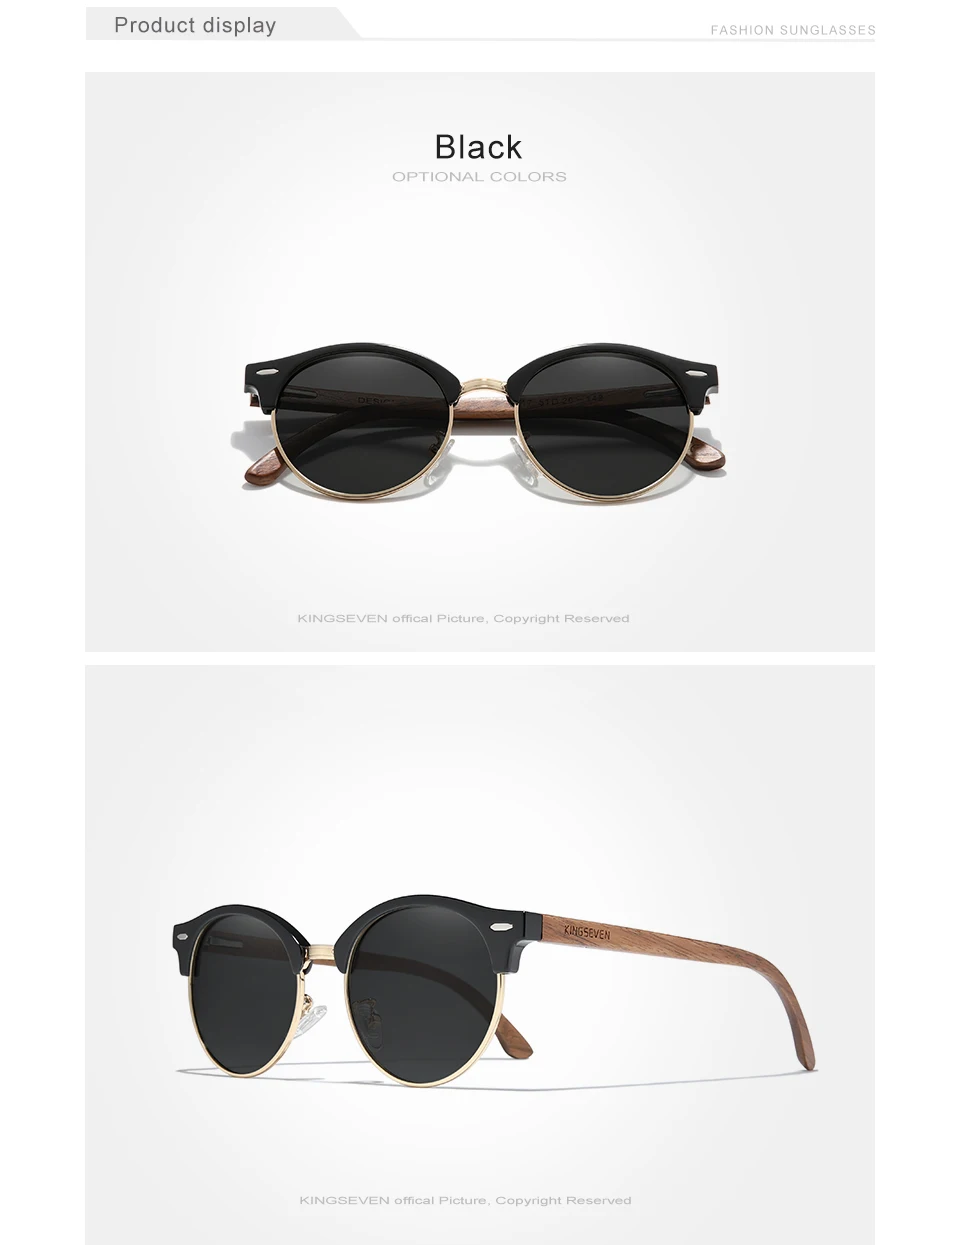 KINGSEVEN Handmade High Quality Wooden Frame Sunglasses UV400